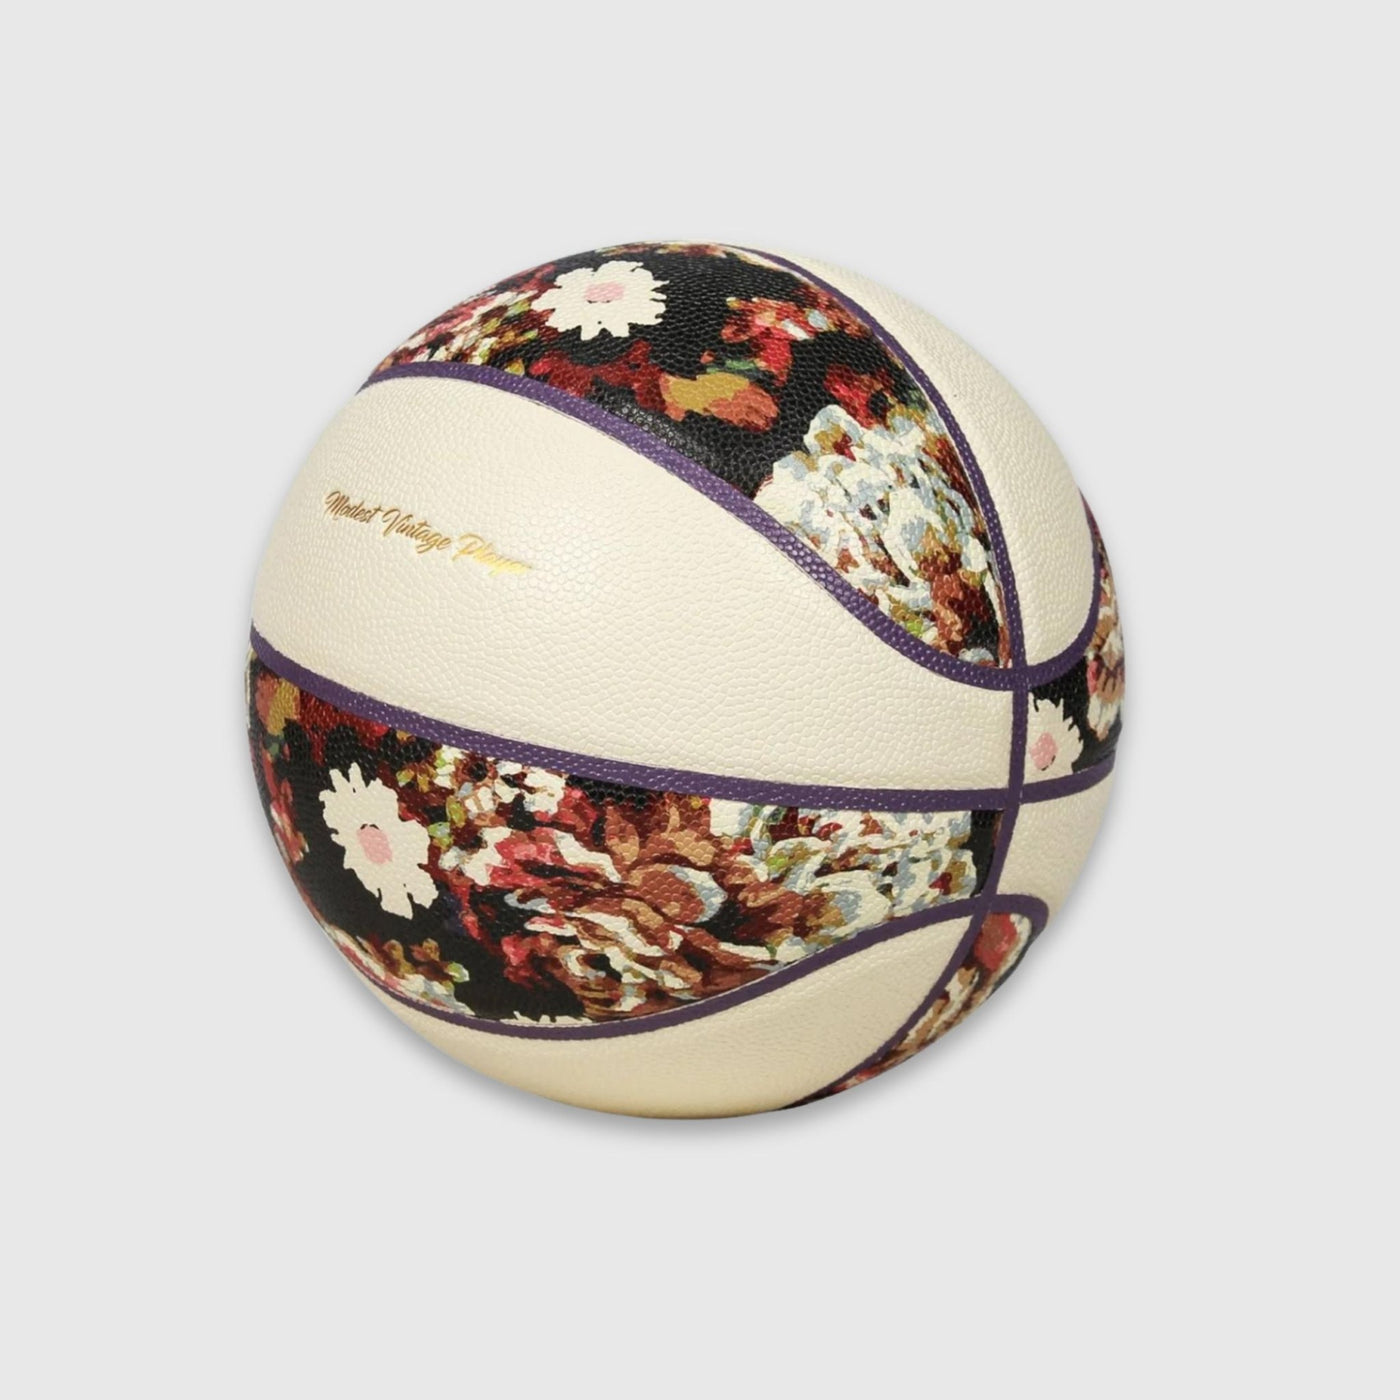 Leather Basketball - Floral - MODEST VINTAGE PLAYER LTD